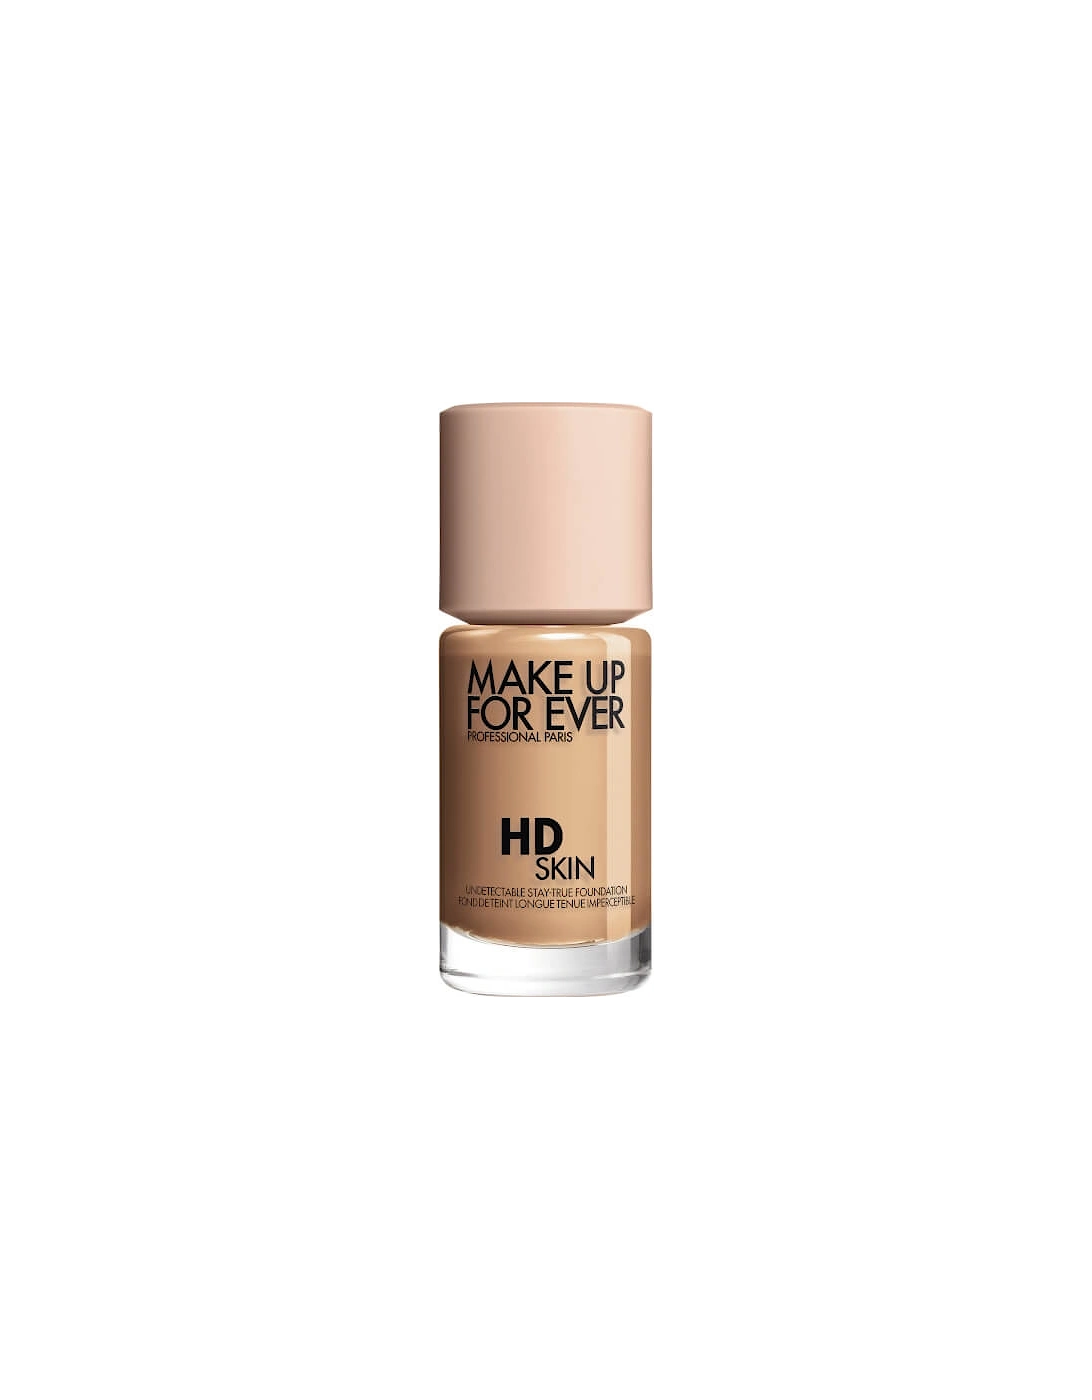 HD Skin Foundation - 2Y32 Warm Caramel, 2 of 1